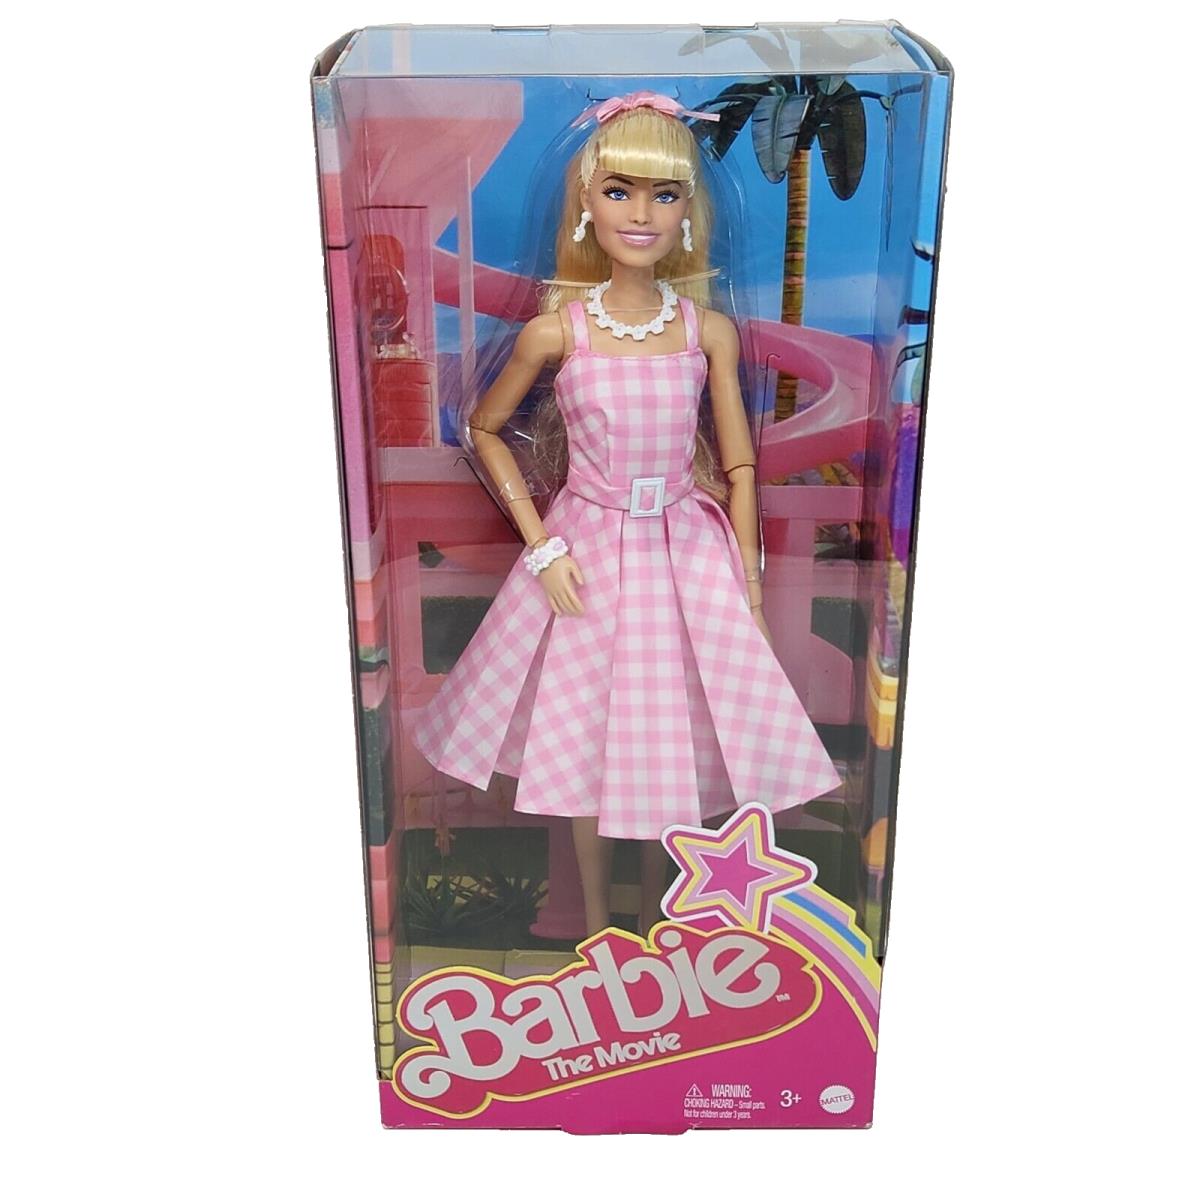 2022 Barbie The Movie Margot Robbie IN Pink Gingham Dress Mattel Nrfb